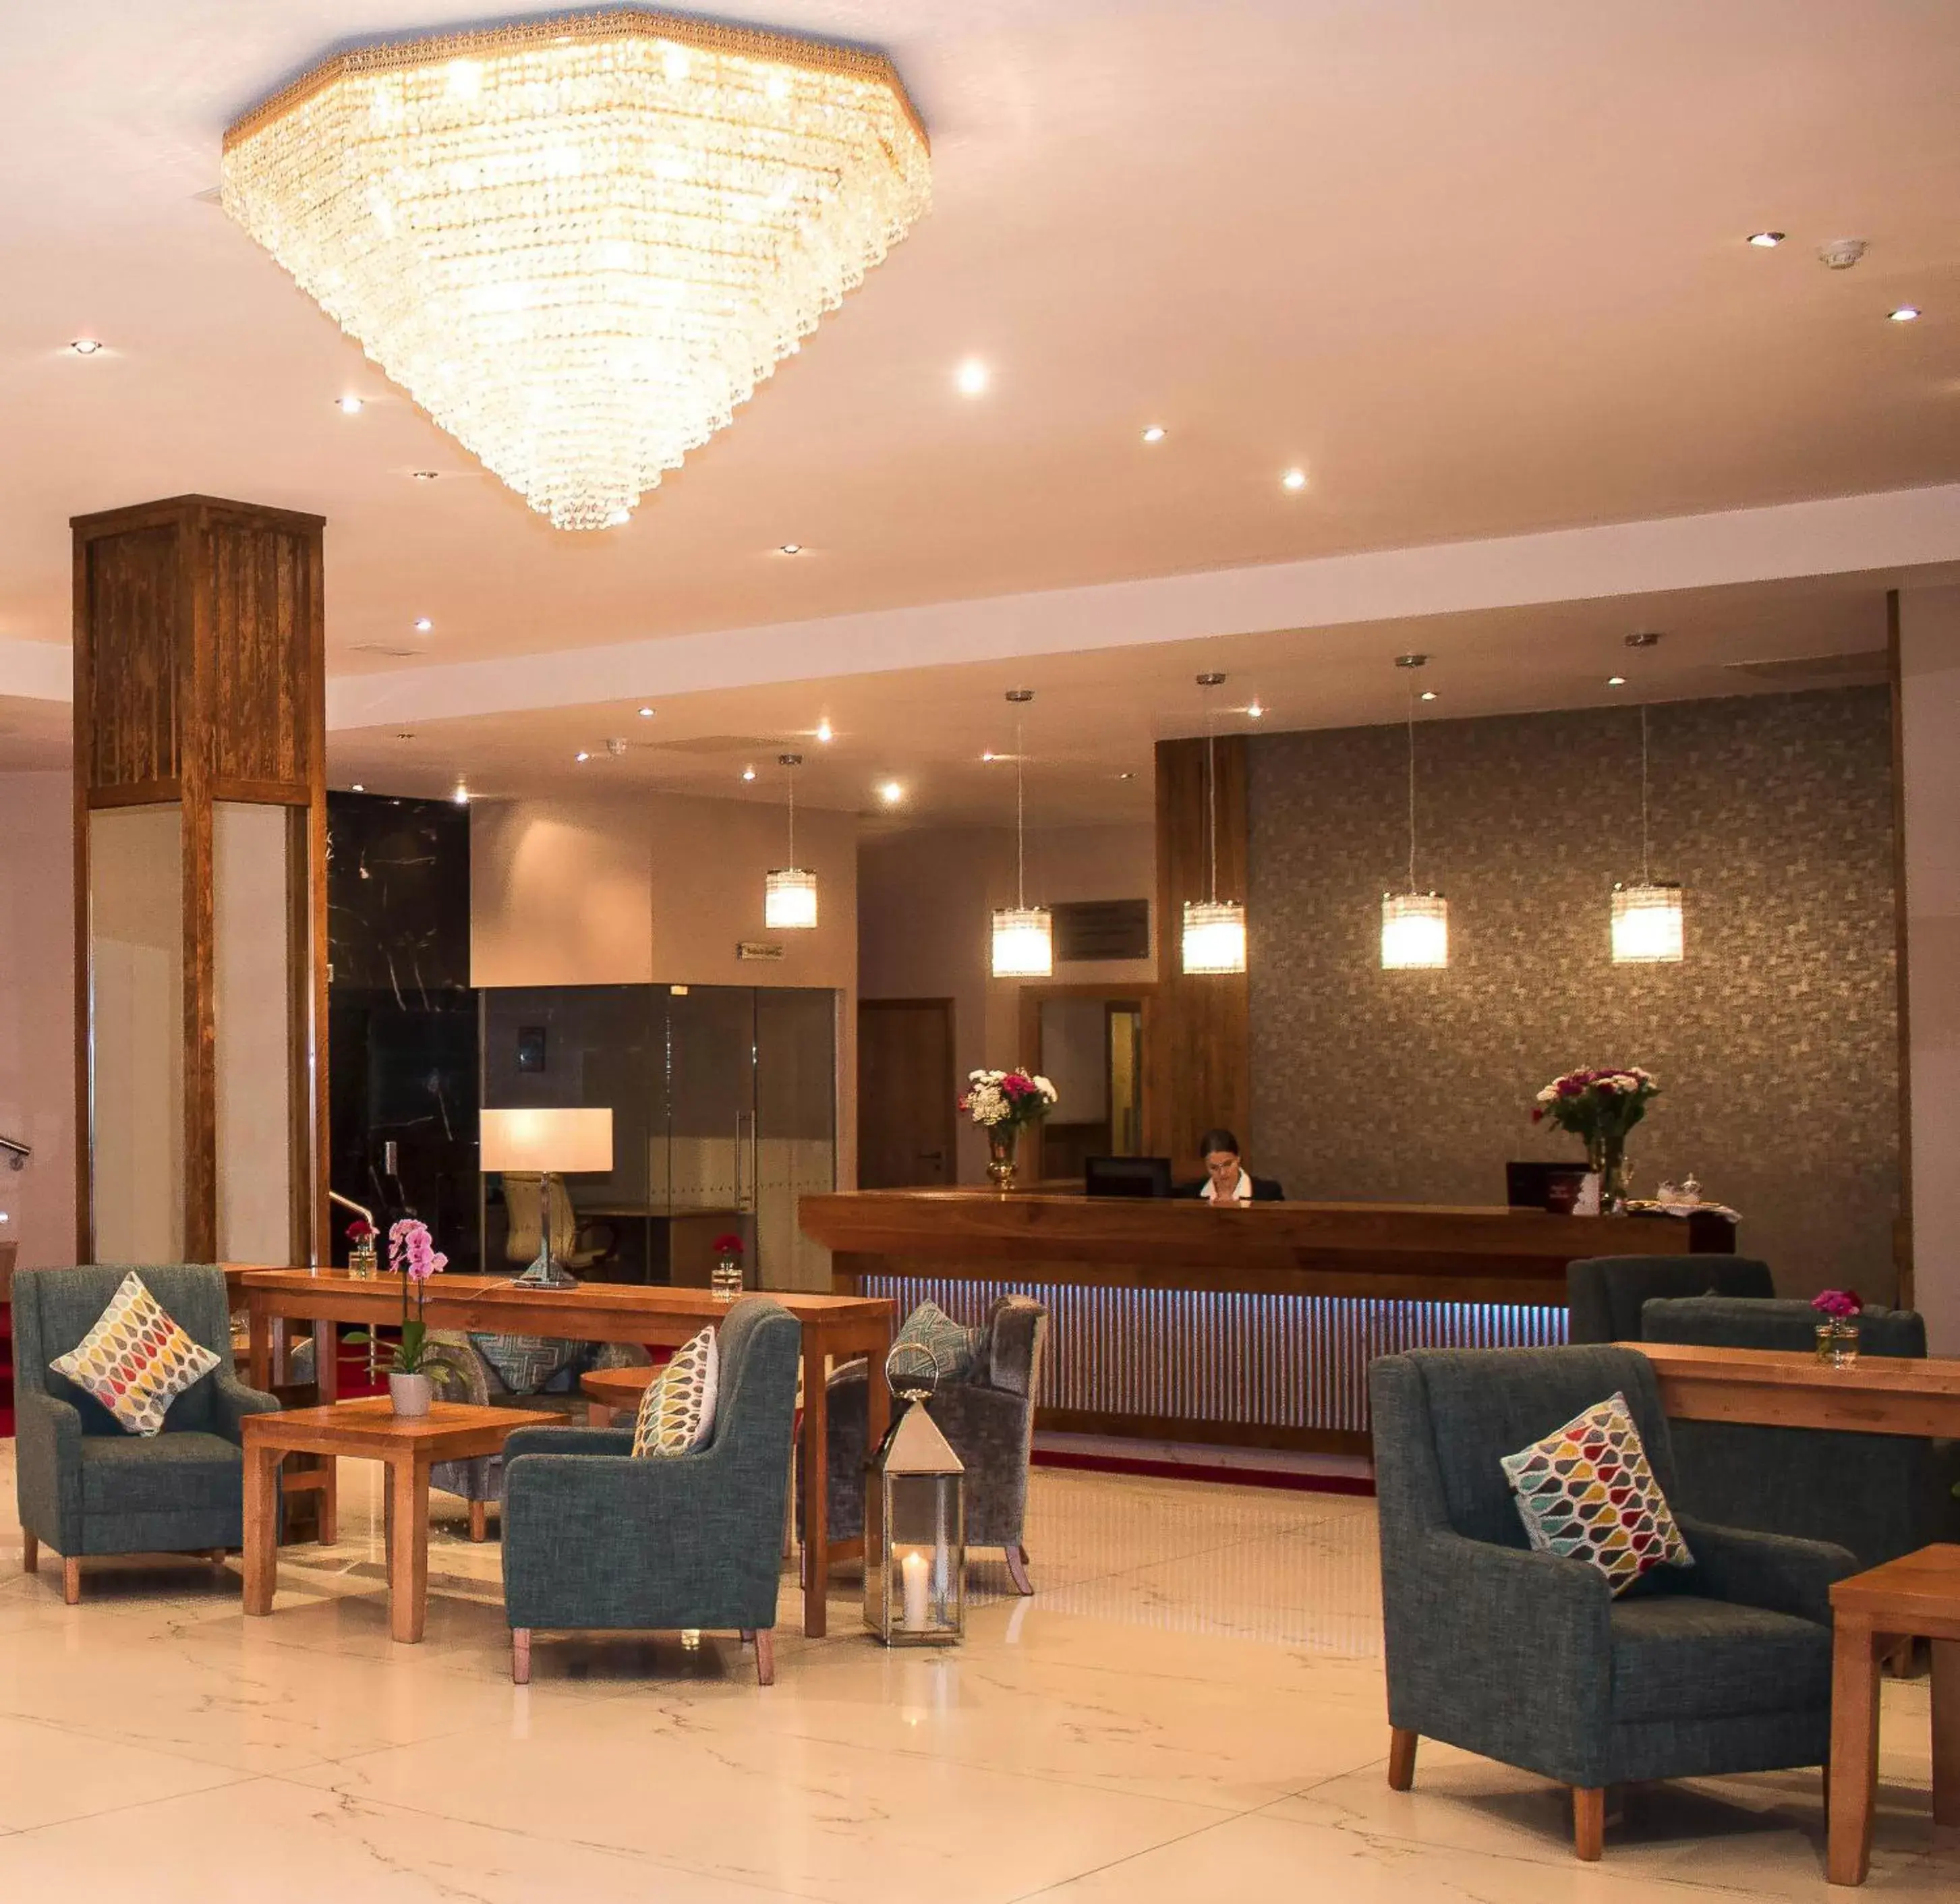 Lobby or reception in Talbot Hotel Clonmel